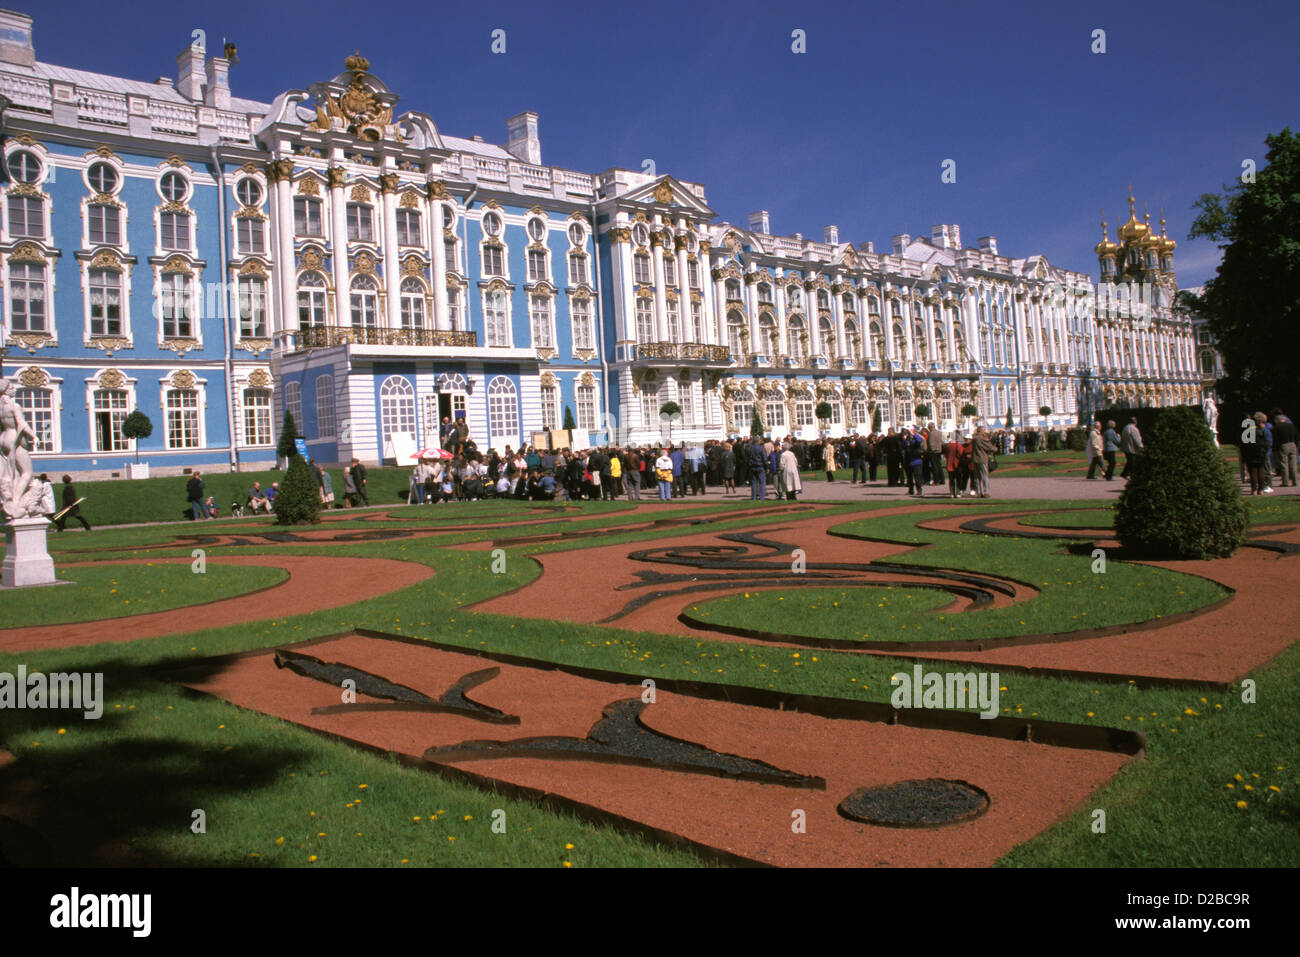 La Russia, San Pietroburgo. Il Palazzo di Caterina In Tsarkoe Selo (zar's Village). Foto Stock